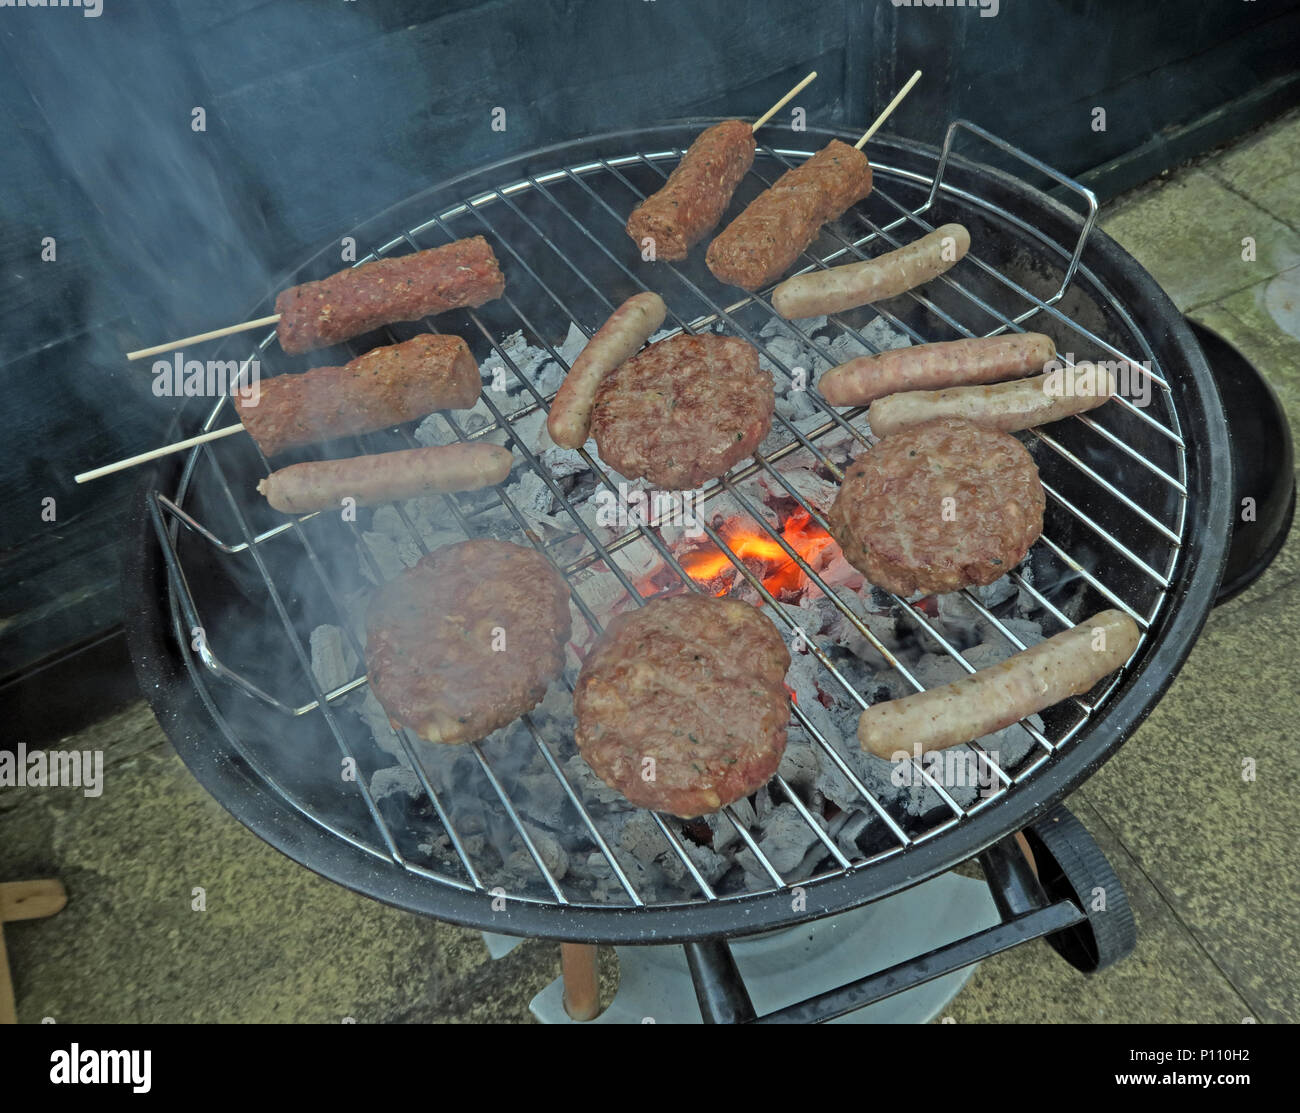 Bien cuit la viande sur barbecue jardin barbecue d'été Banque D'Images